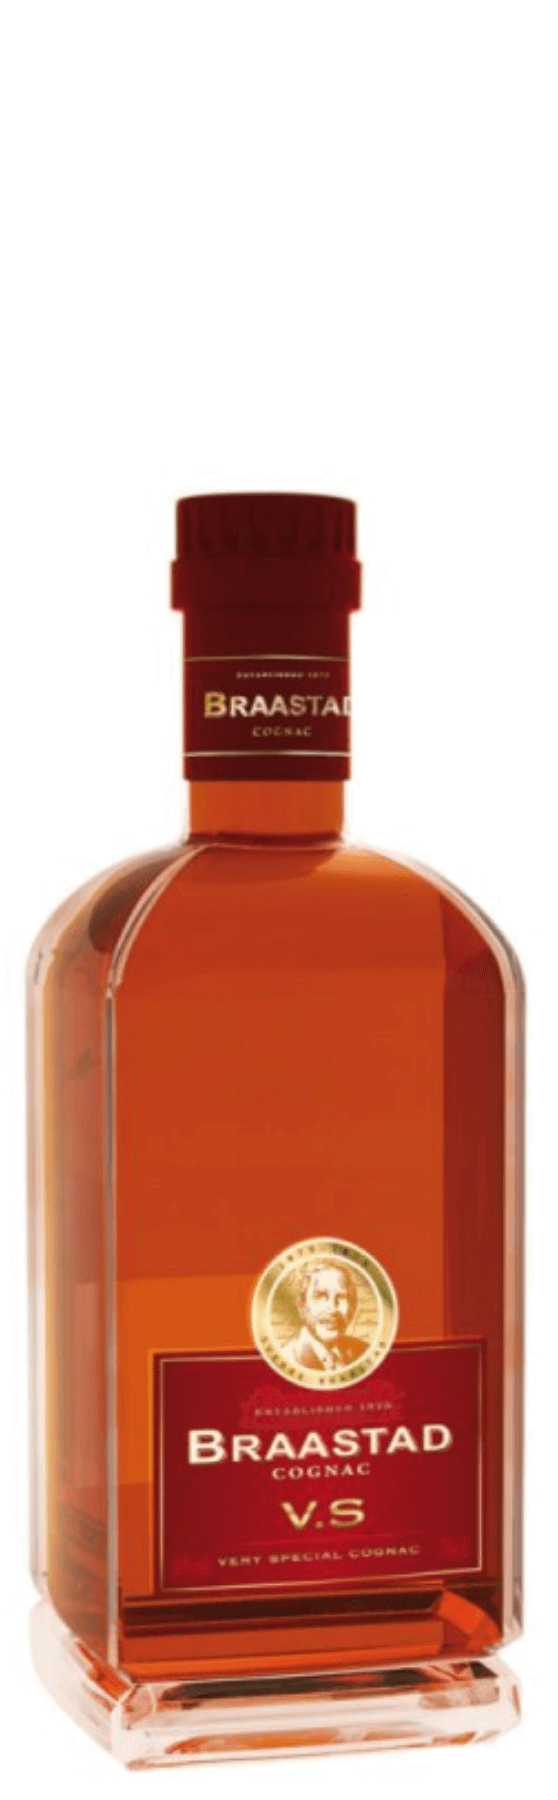 Braastad Cognac V.S.